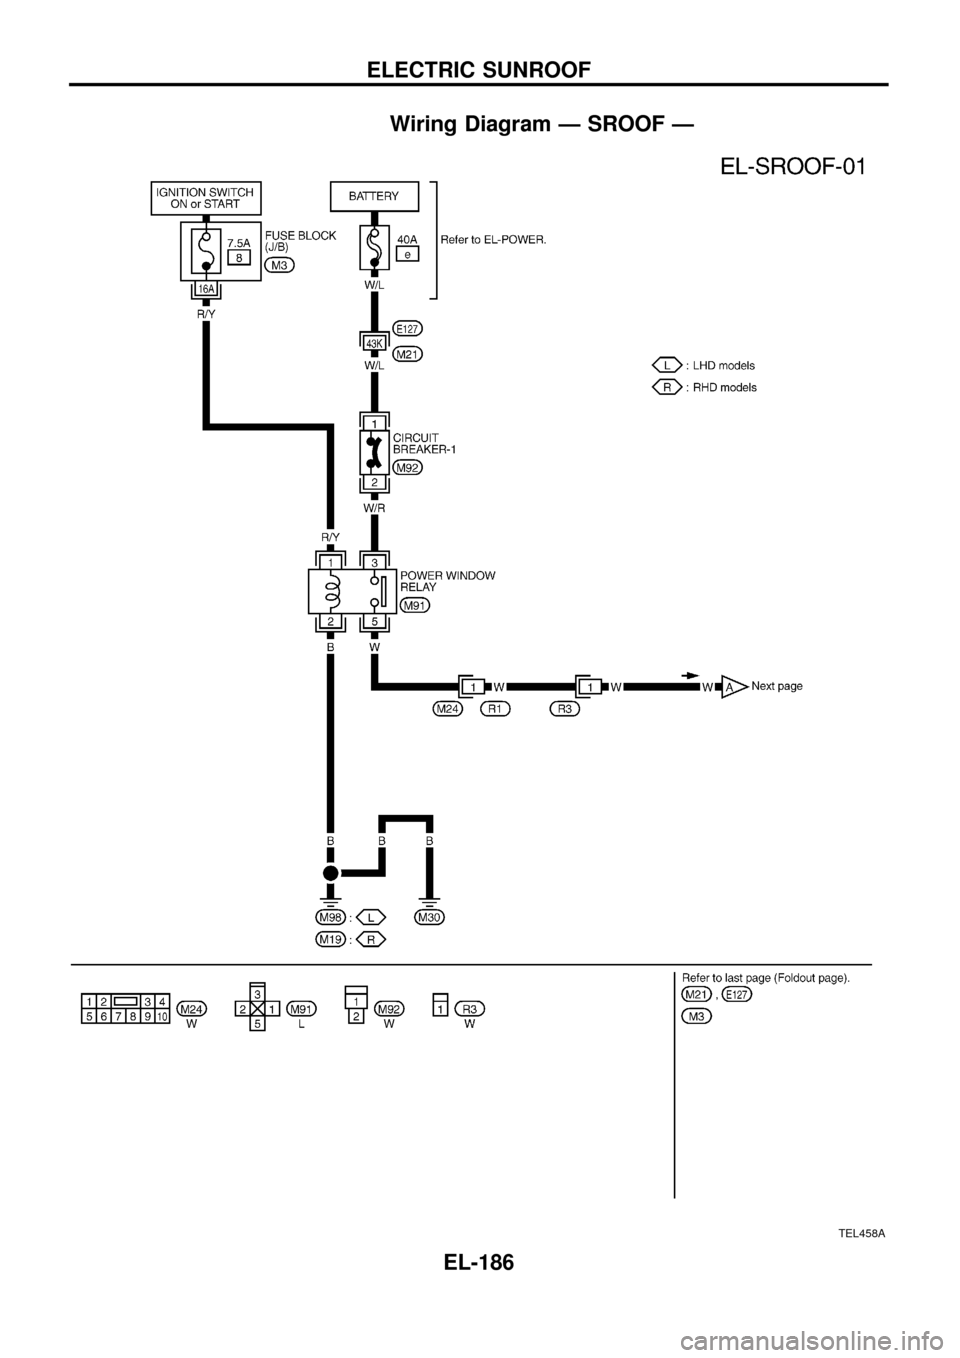 NISSAN PATROL 1998 Y61 / 5.G Electrical System Workshop Manual Wiring Diagram Ð SROOF Ð
TEL458A
ELECTRIC SUNROOF
EL-186 